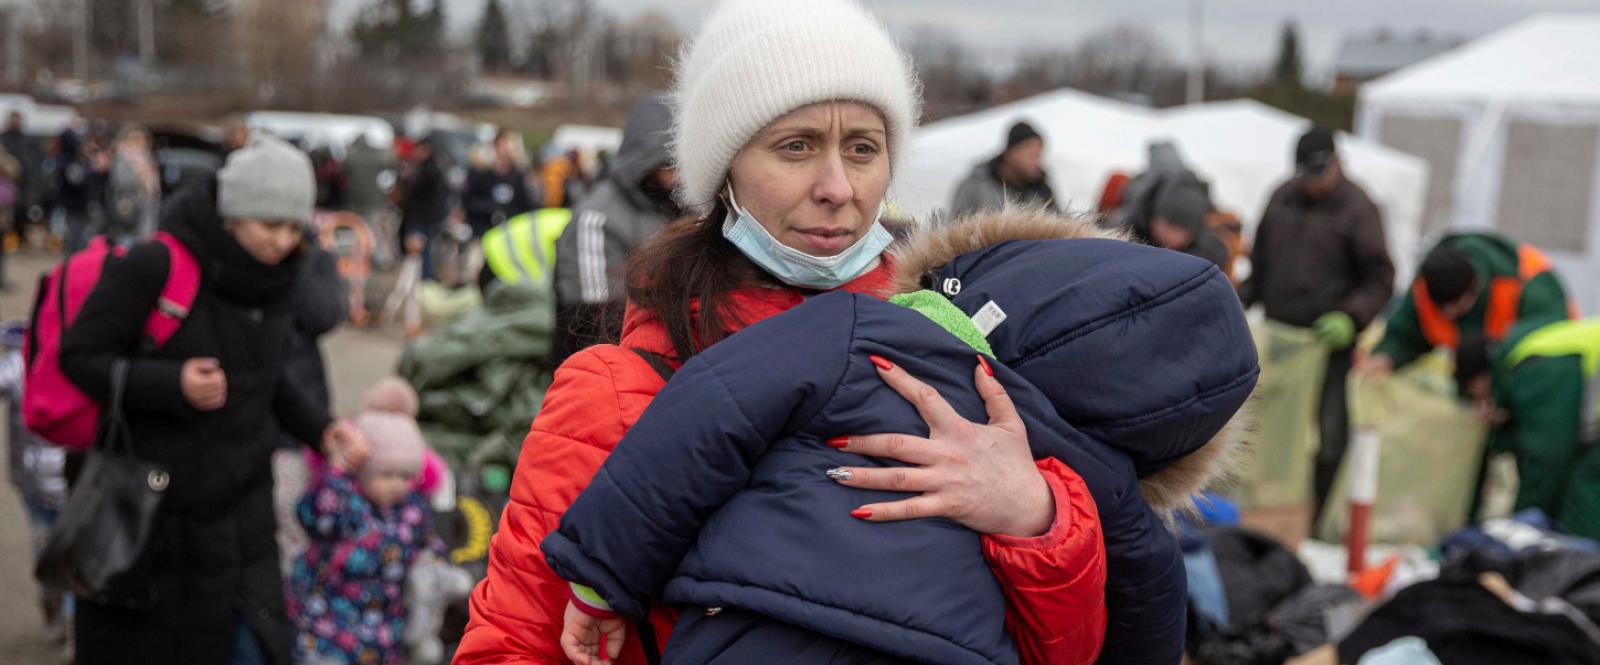 Los refugiados ucranianos buscan salir de su país tras la invasión rusa / ACNUR 